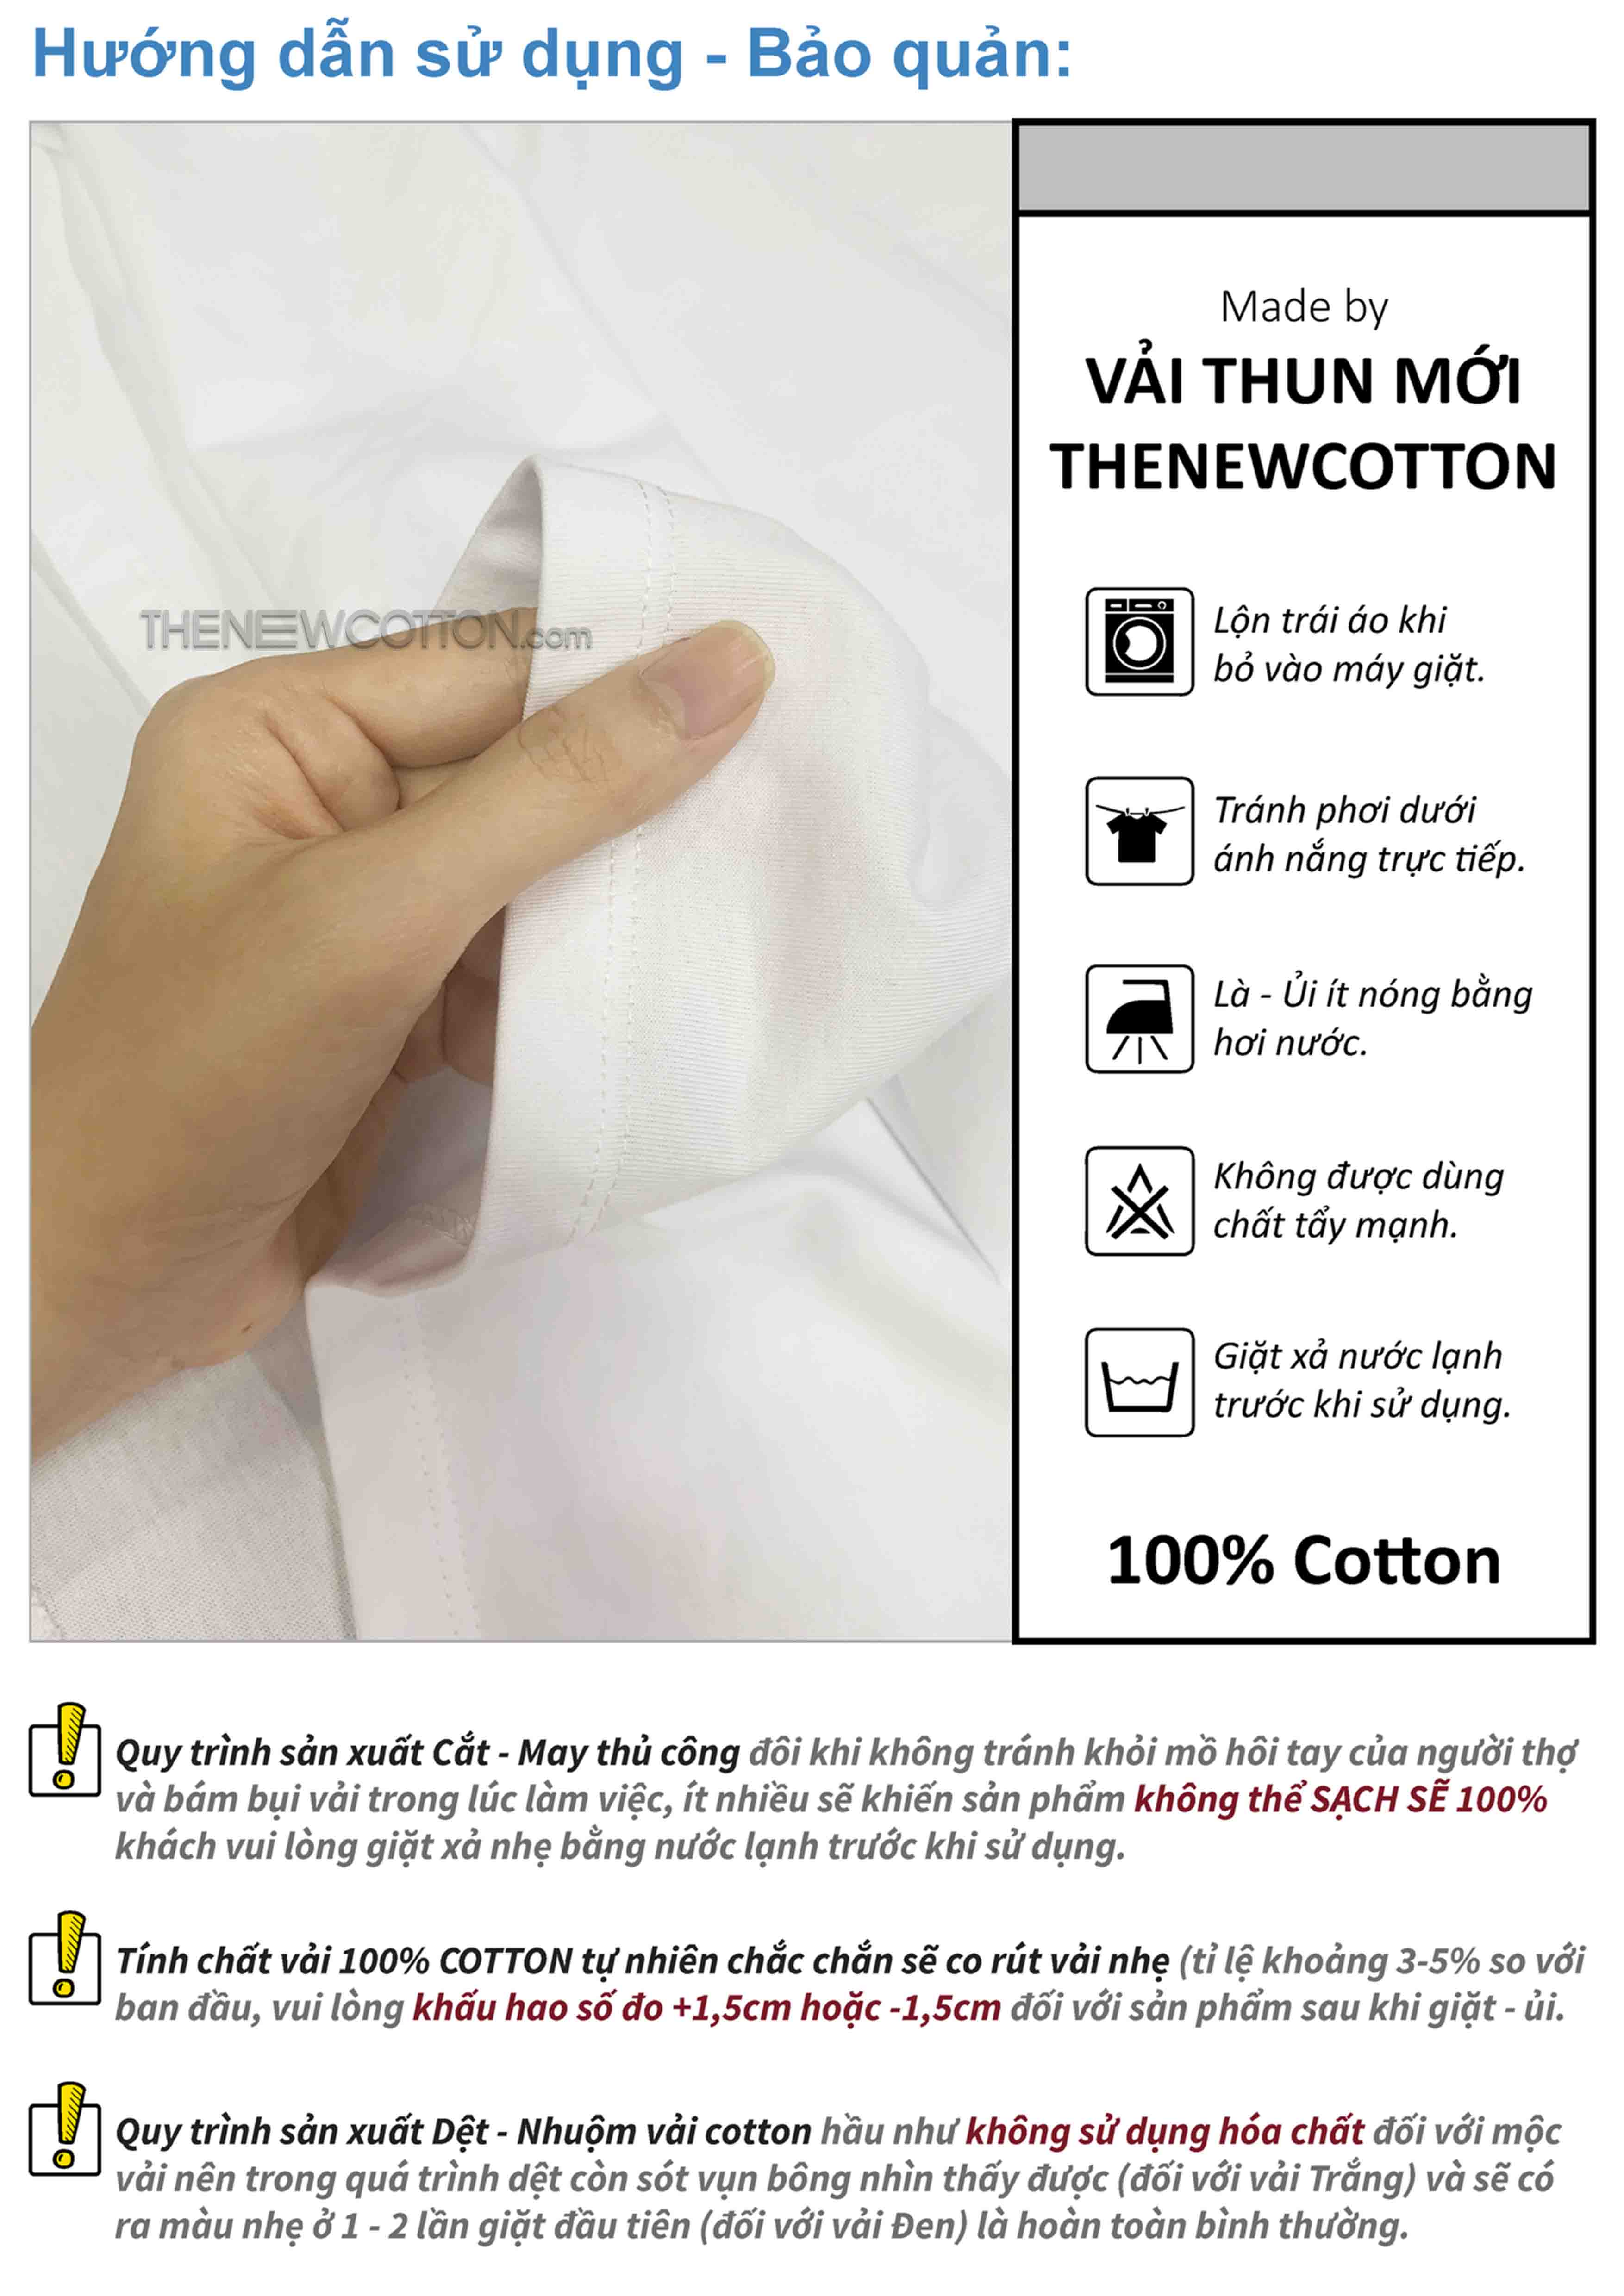 Chuyên Sỉ Phôi Áo Trơn x Vải Thun 100% Cotton Local Brand (Top VN) | Xưởng May Áo Unisex STreetwear Theo Yêu Cầu - TheNewCotton.com